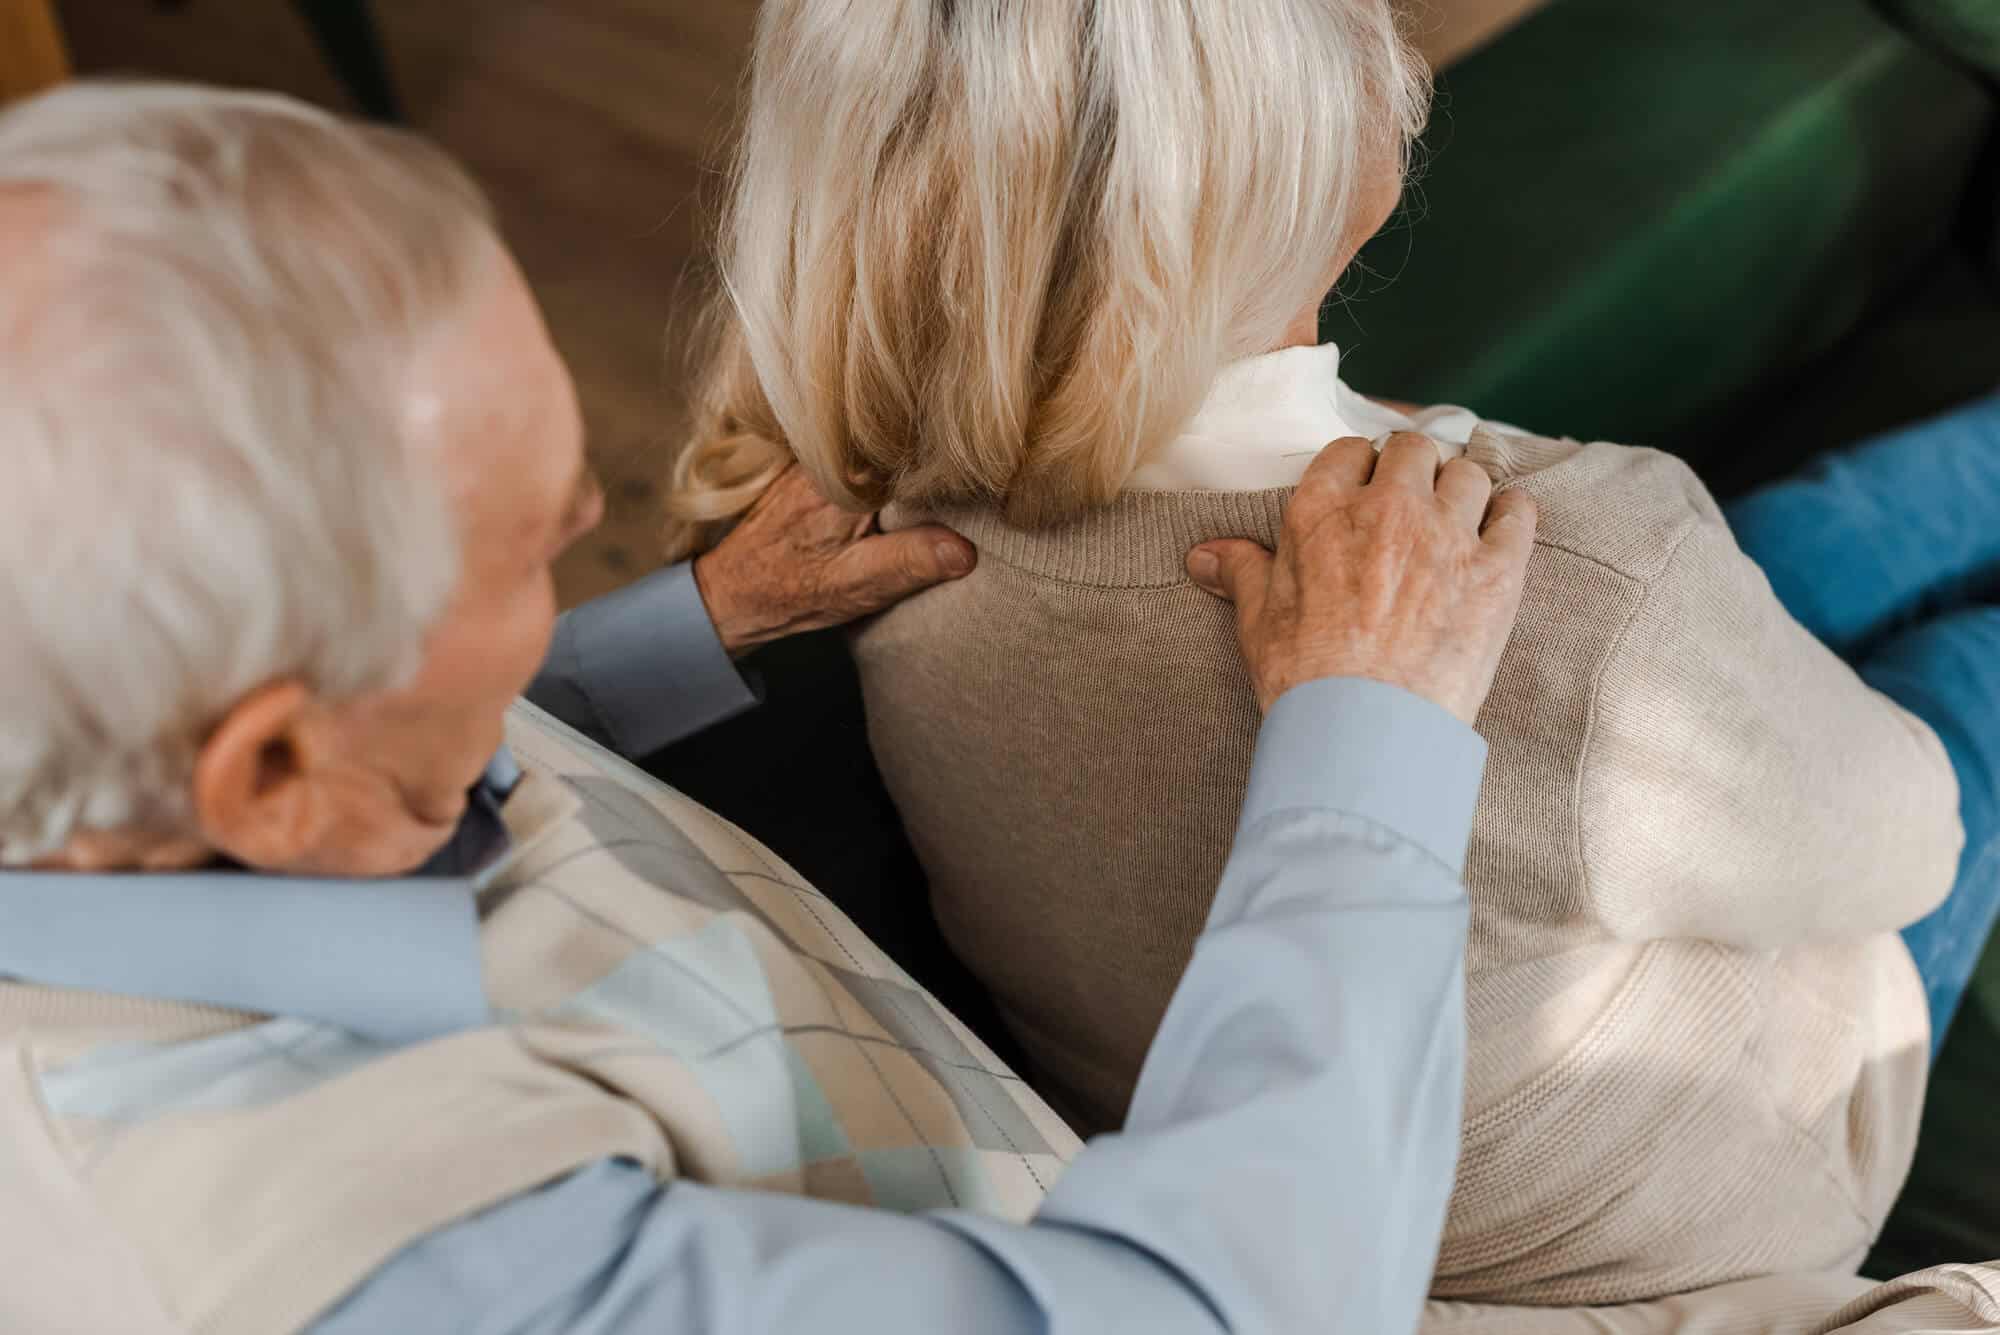 older man giving an older woman a shoulder massage at home